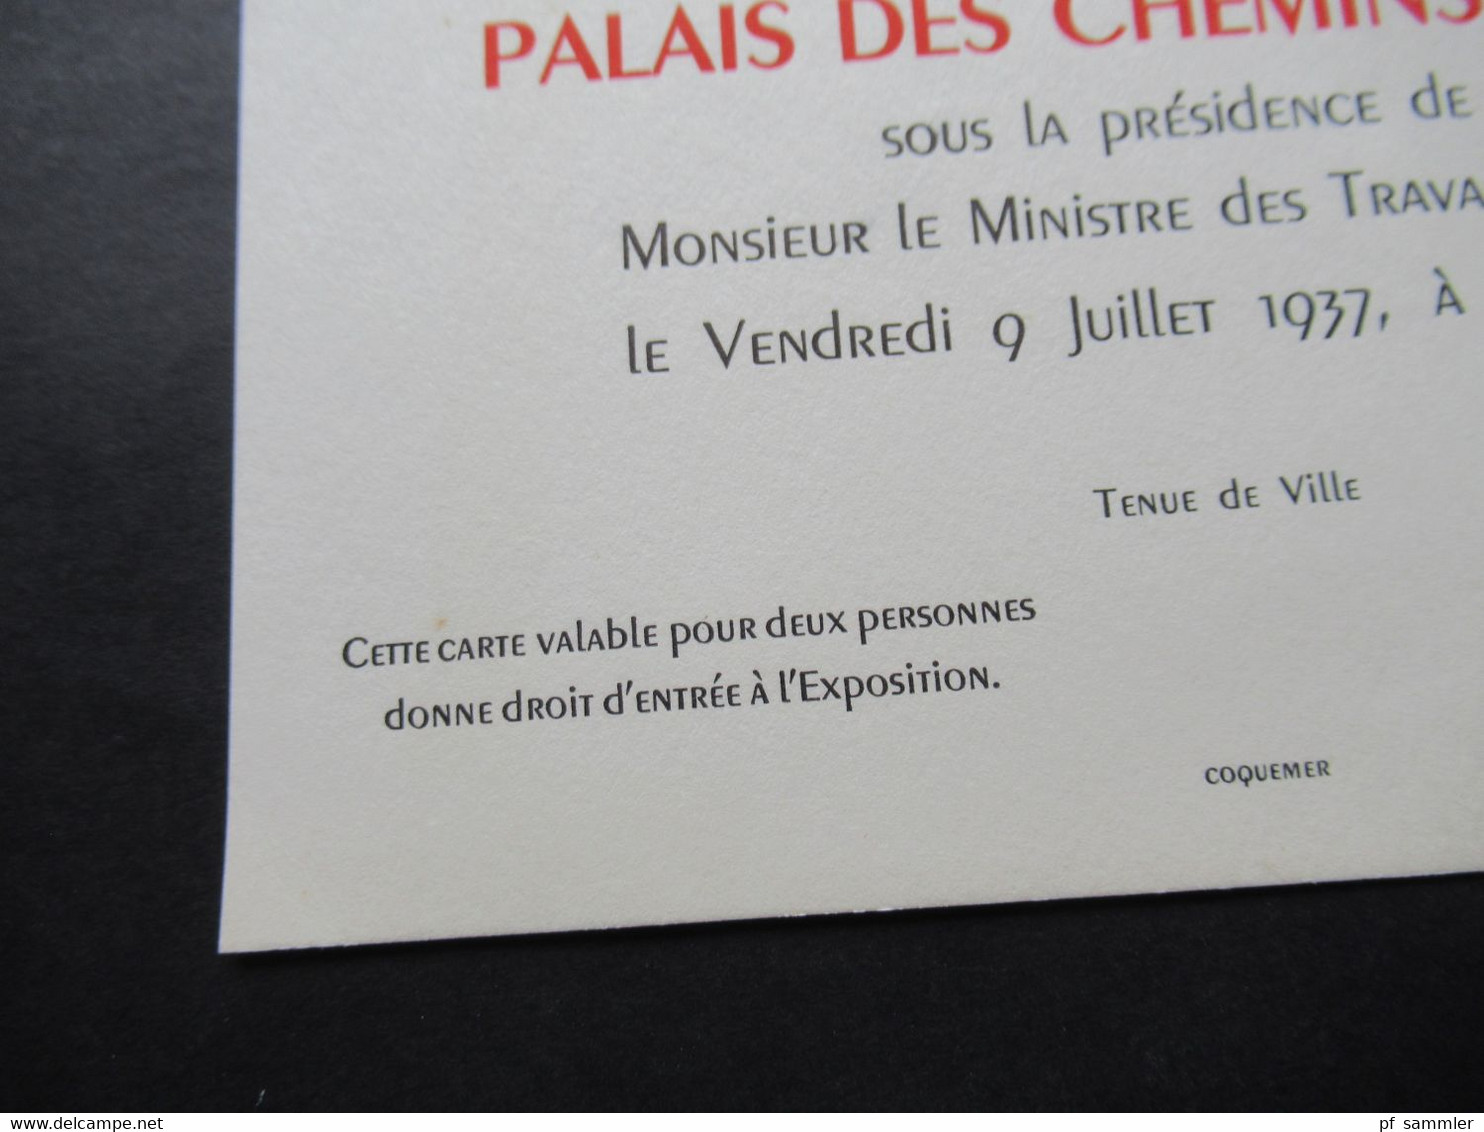 1937 Einladungskarte Palais Des Chemins De Fer Sous La Presidence De Le Ministre De Travauv Publics Tenue De Ville - Historical Documents